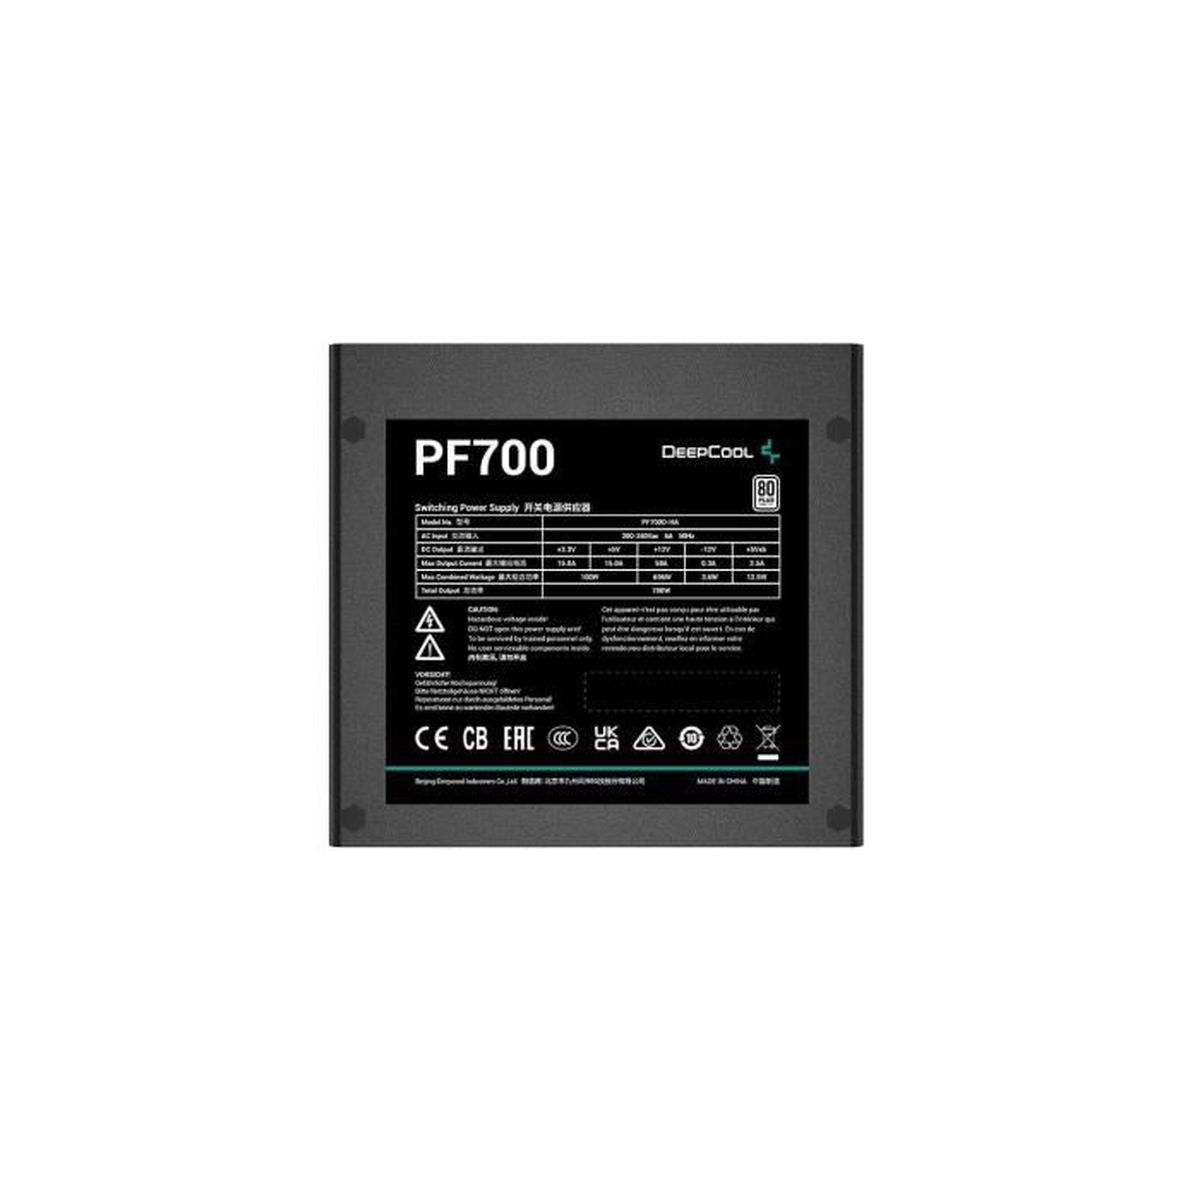 DEEPCOOL PF700 PC-Netzteil 700 Watt